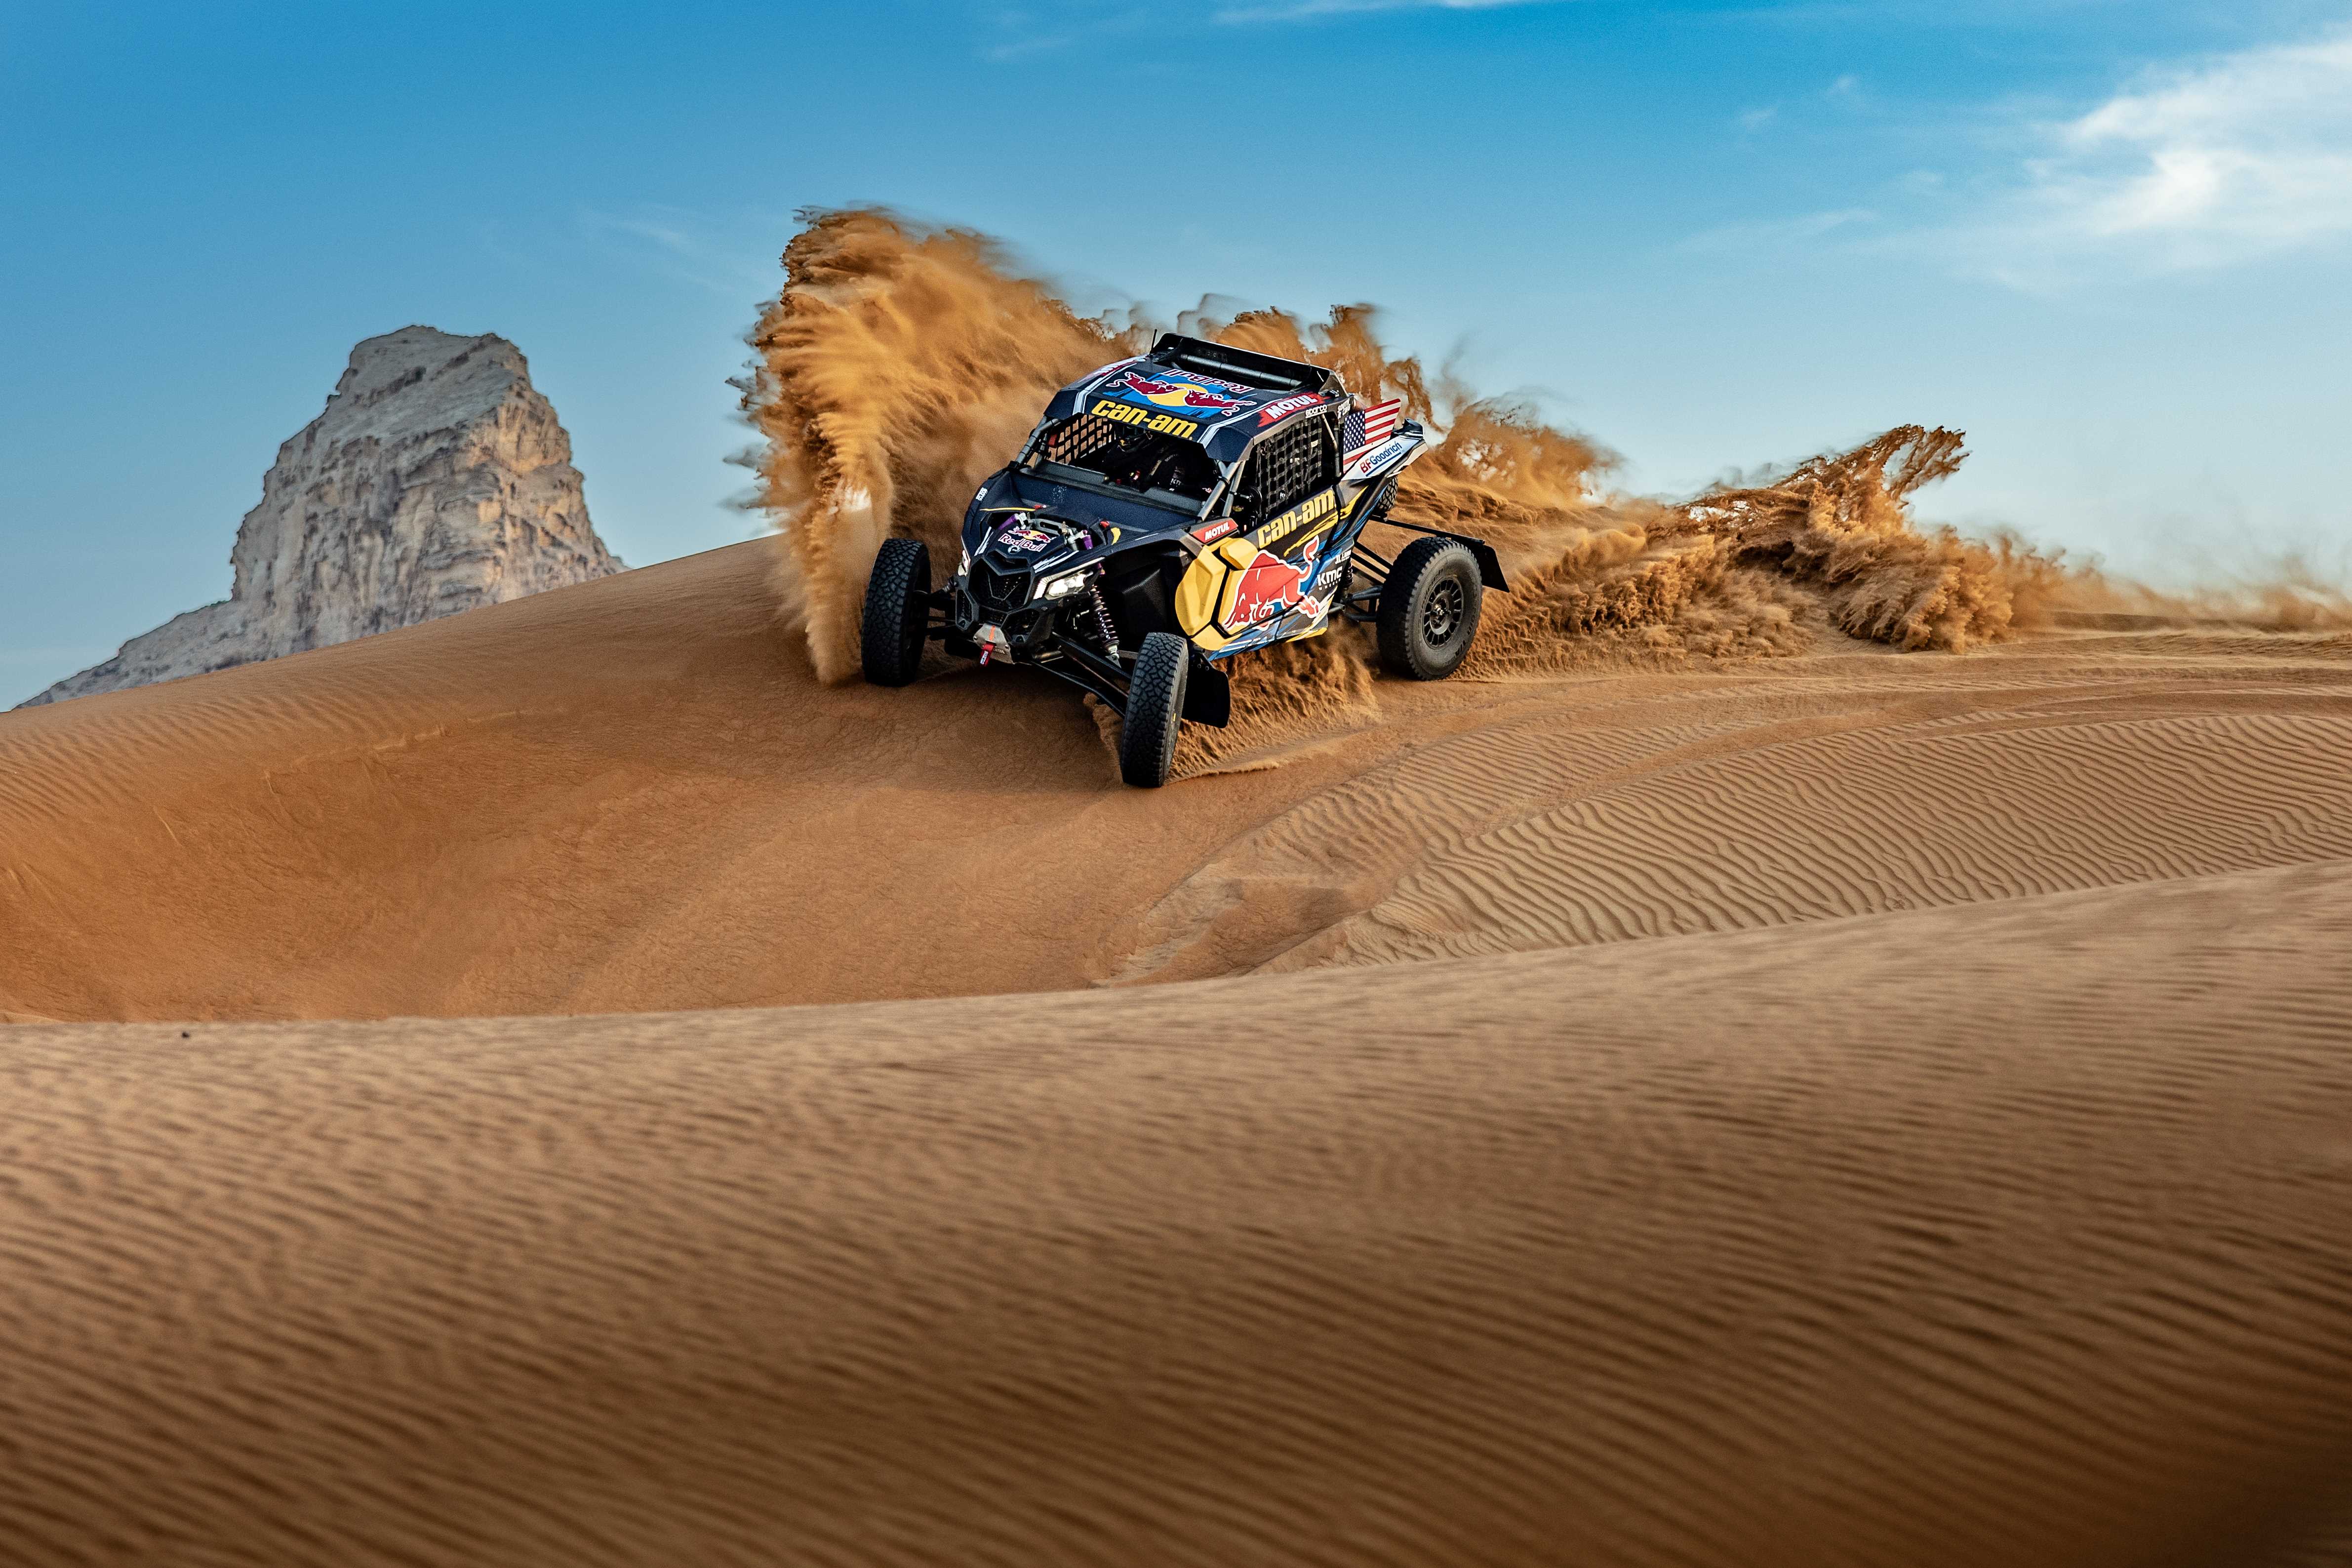 Maverick sur une dune de sable en Arabie saoudite